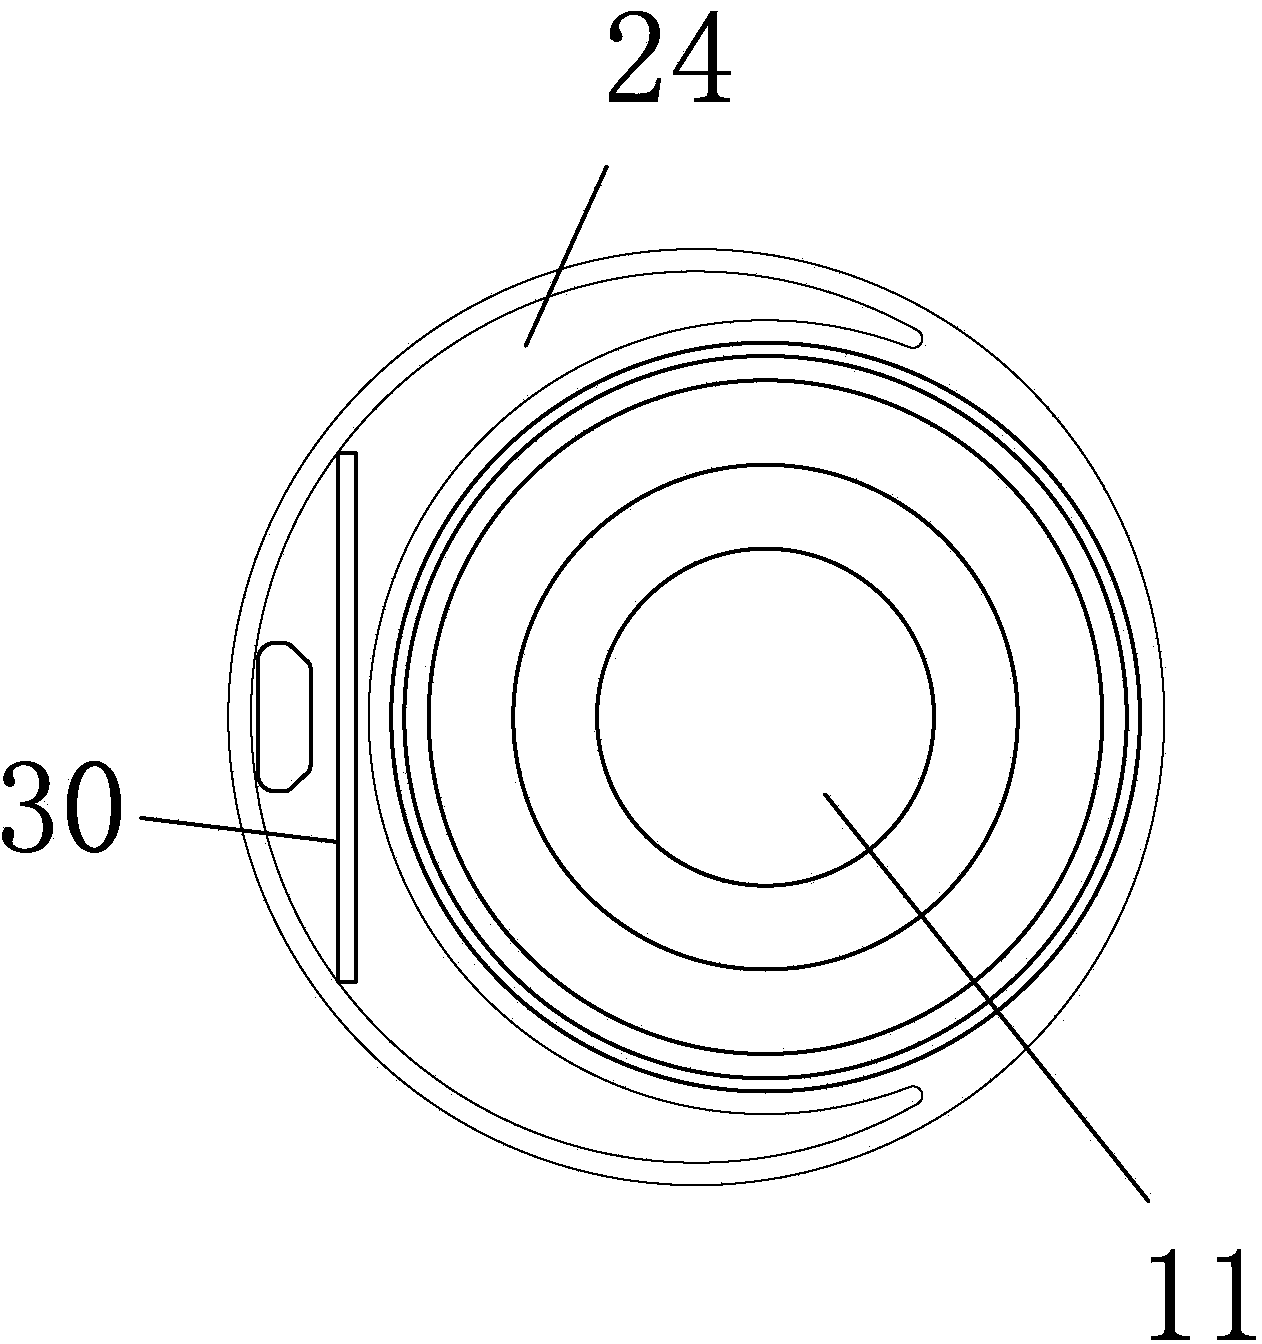 Acoustic structure with passive vibrating diaphragm unit